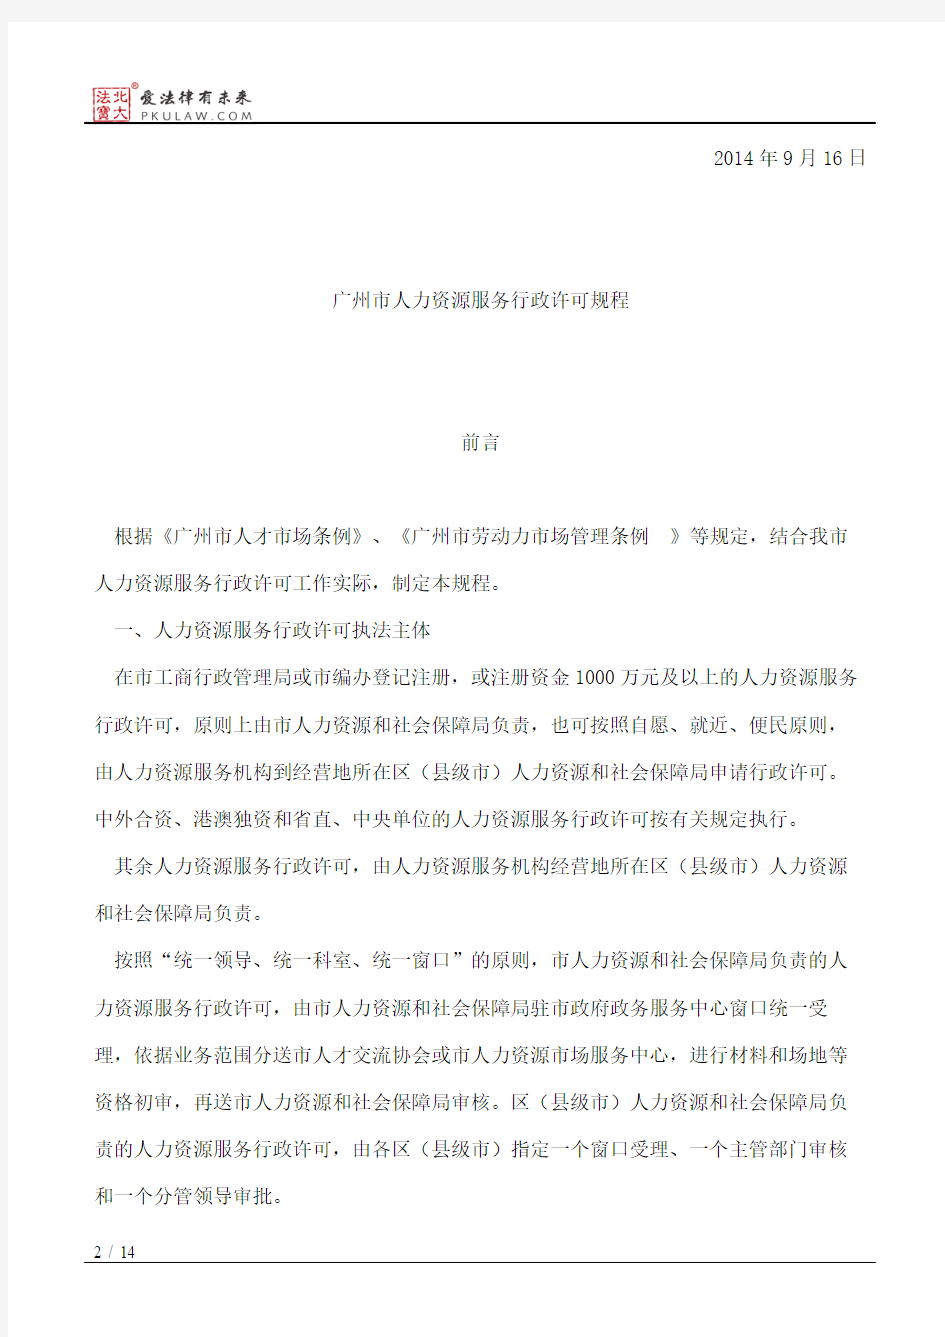 广州市人力资源和社会保障局关于印发《广州市人力资源服务行政许